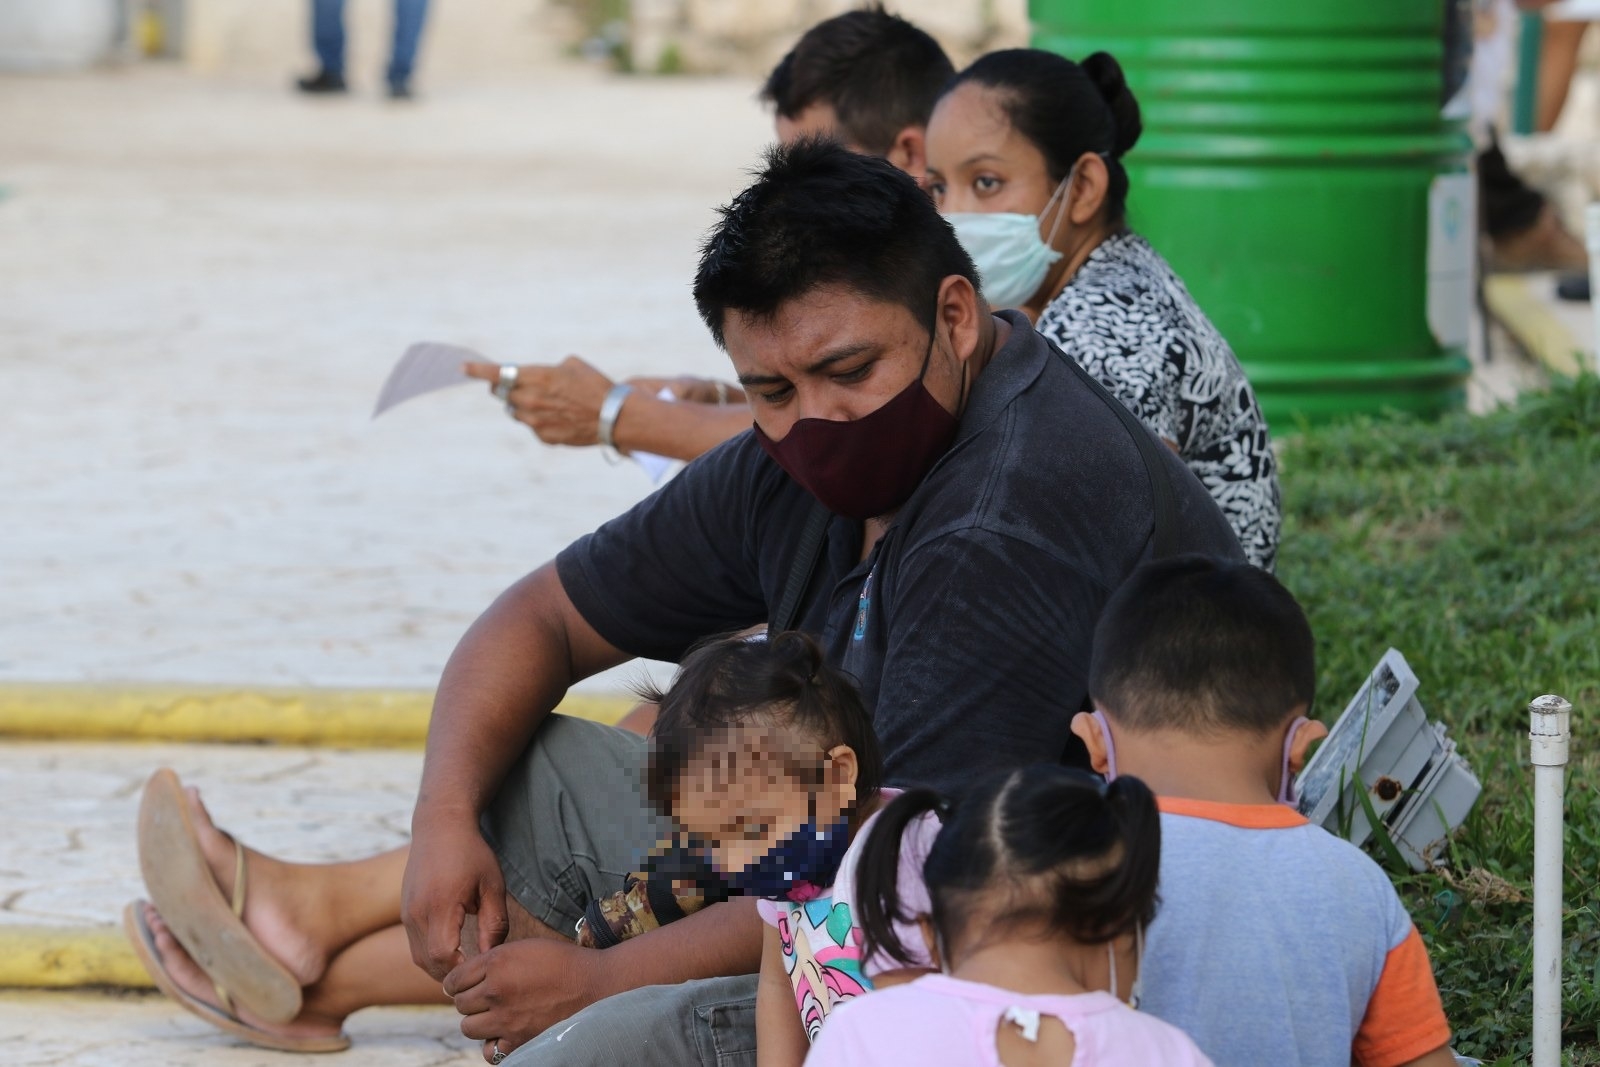 Ensanut revela bajo nivel de vacunación en niños de la Península de Yucatán: sólo el 6.5% tiene esquema completo